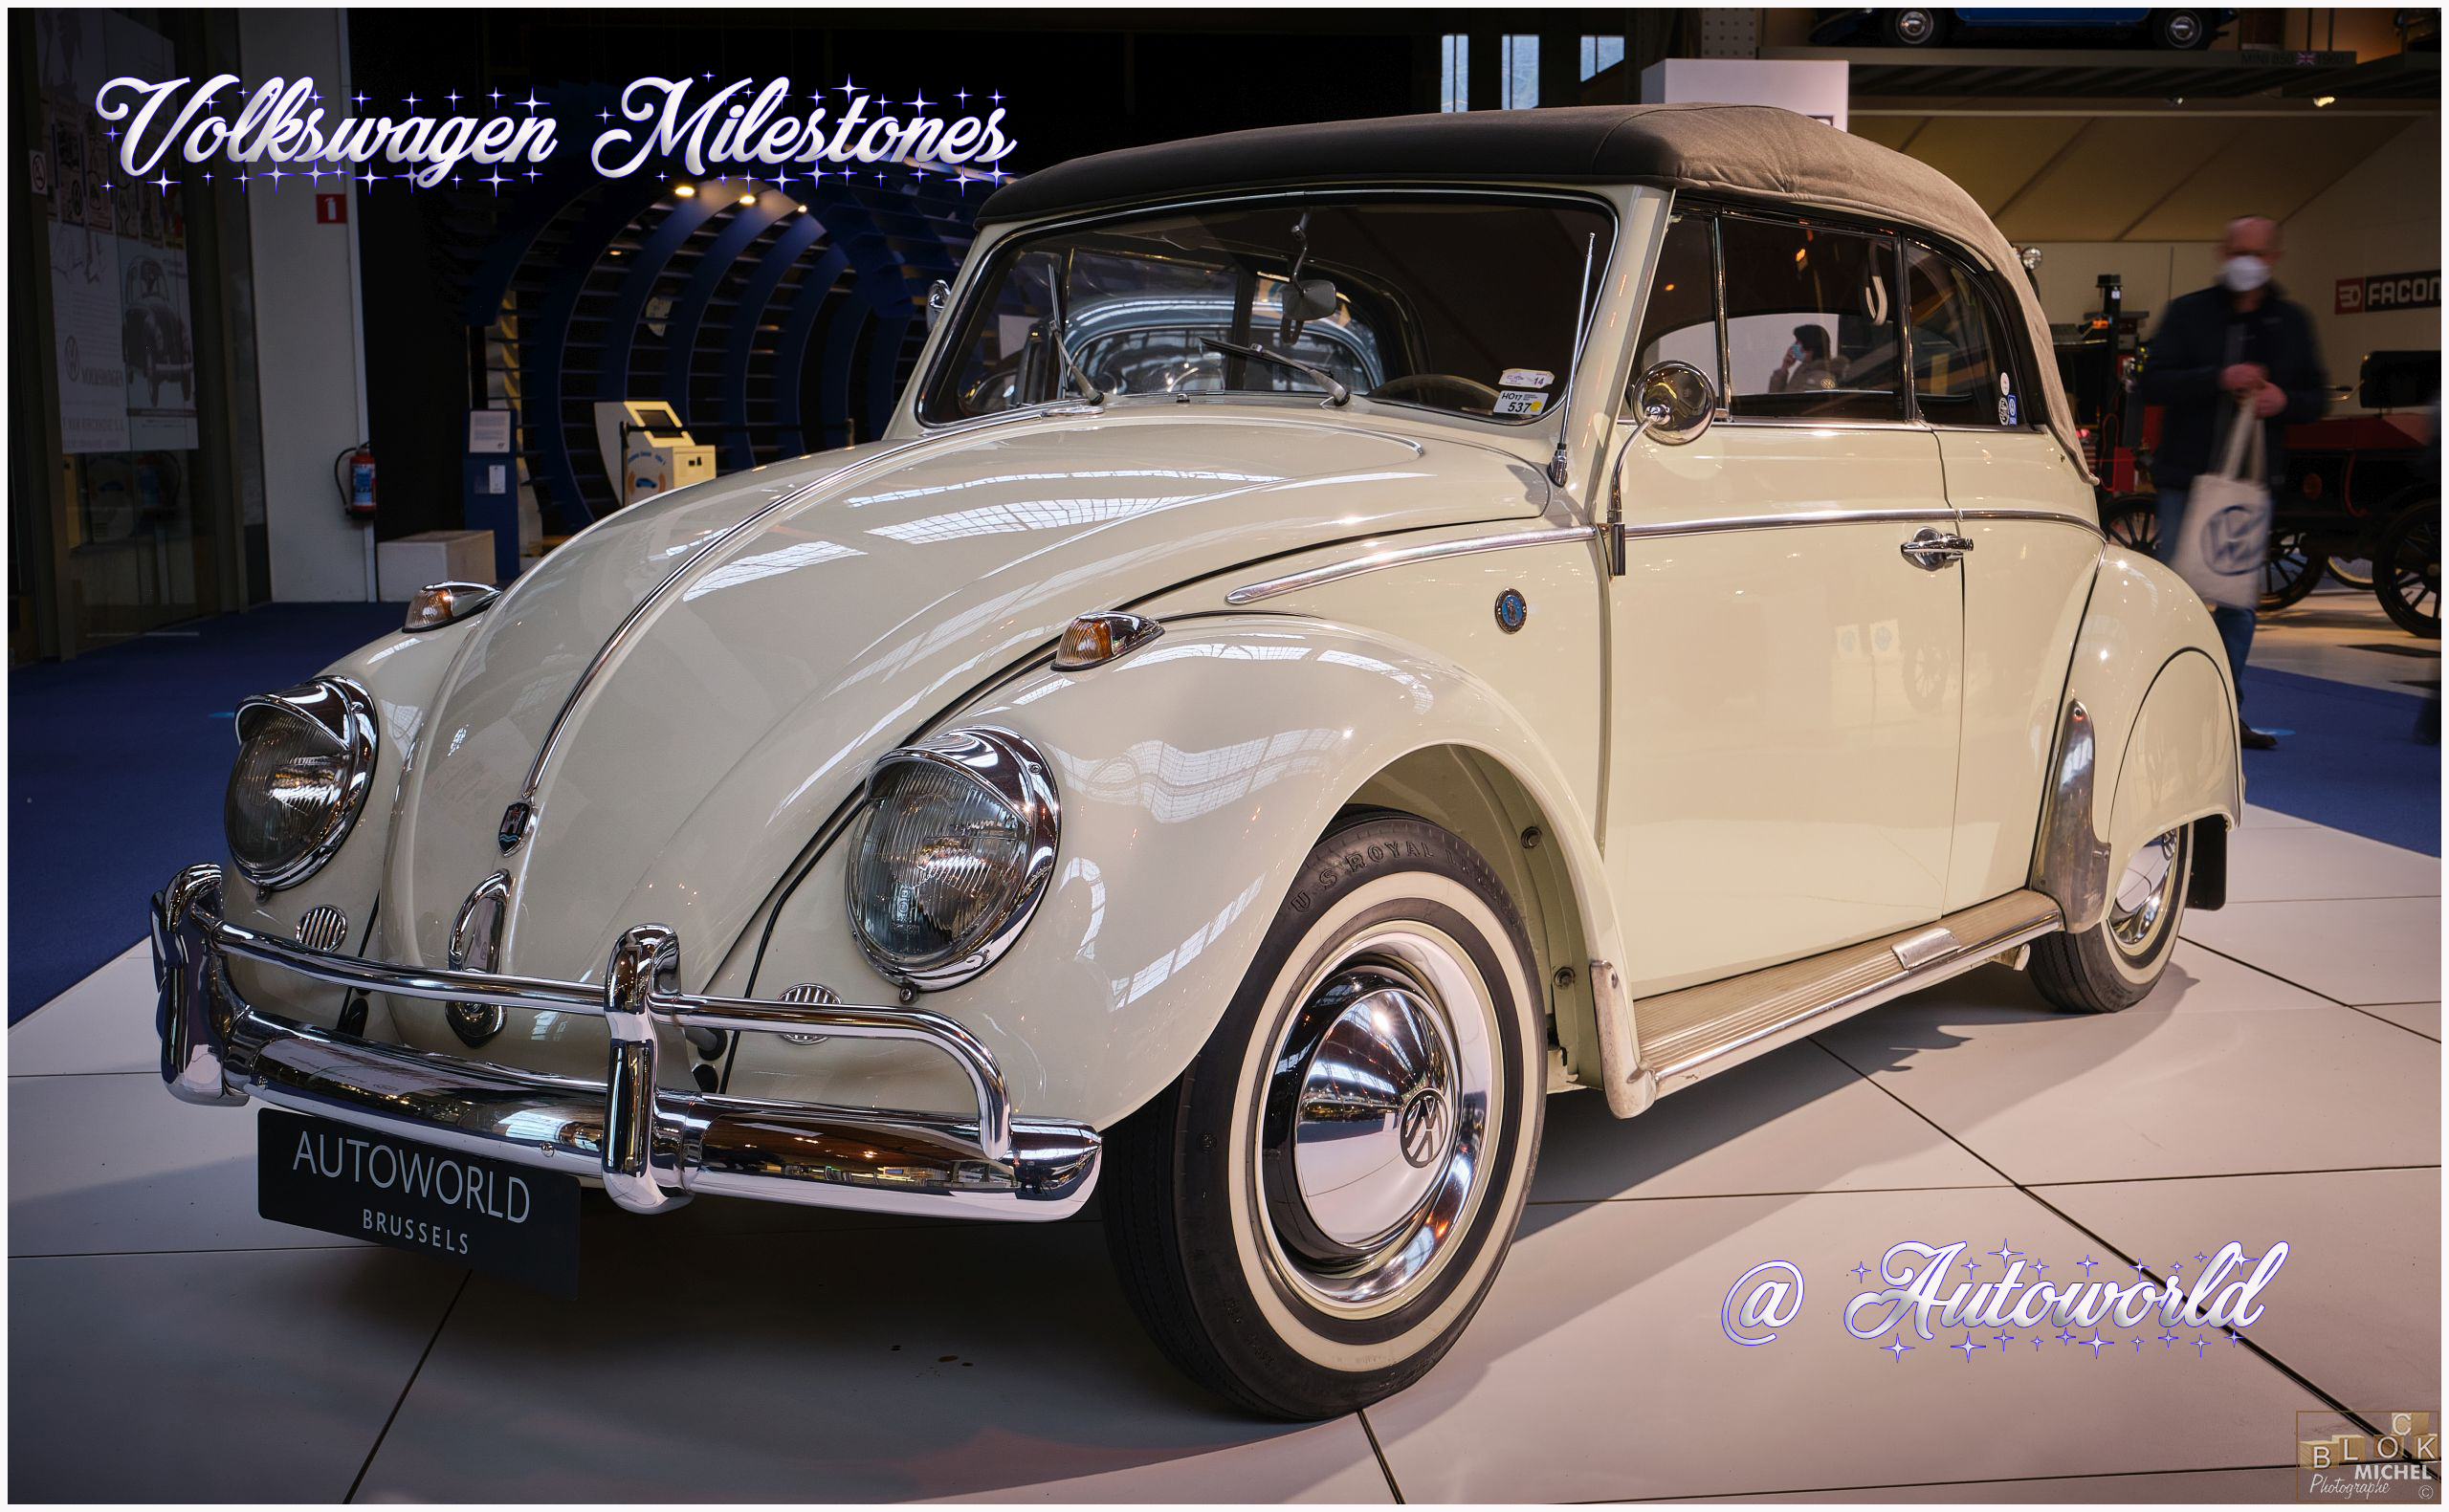 Volkswagen Milestones 2021 @ Autoworld